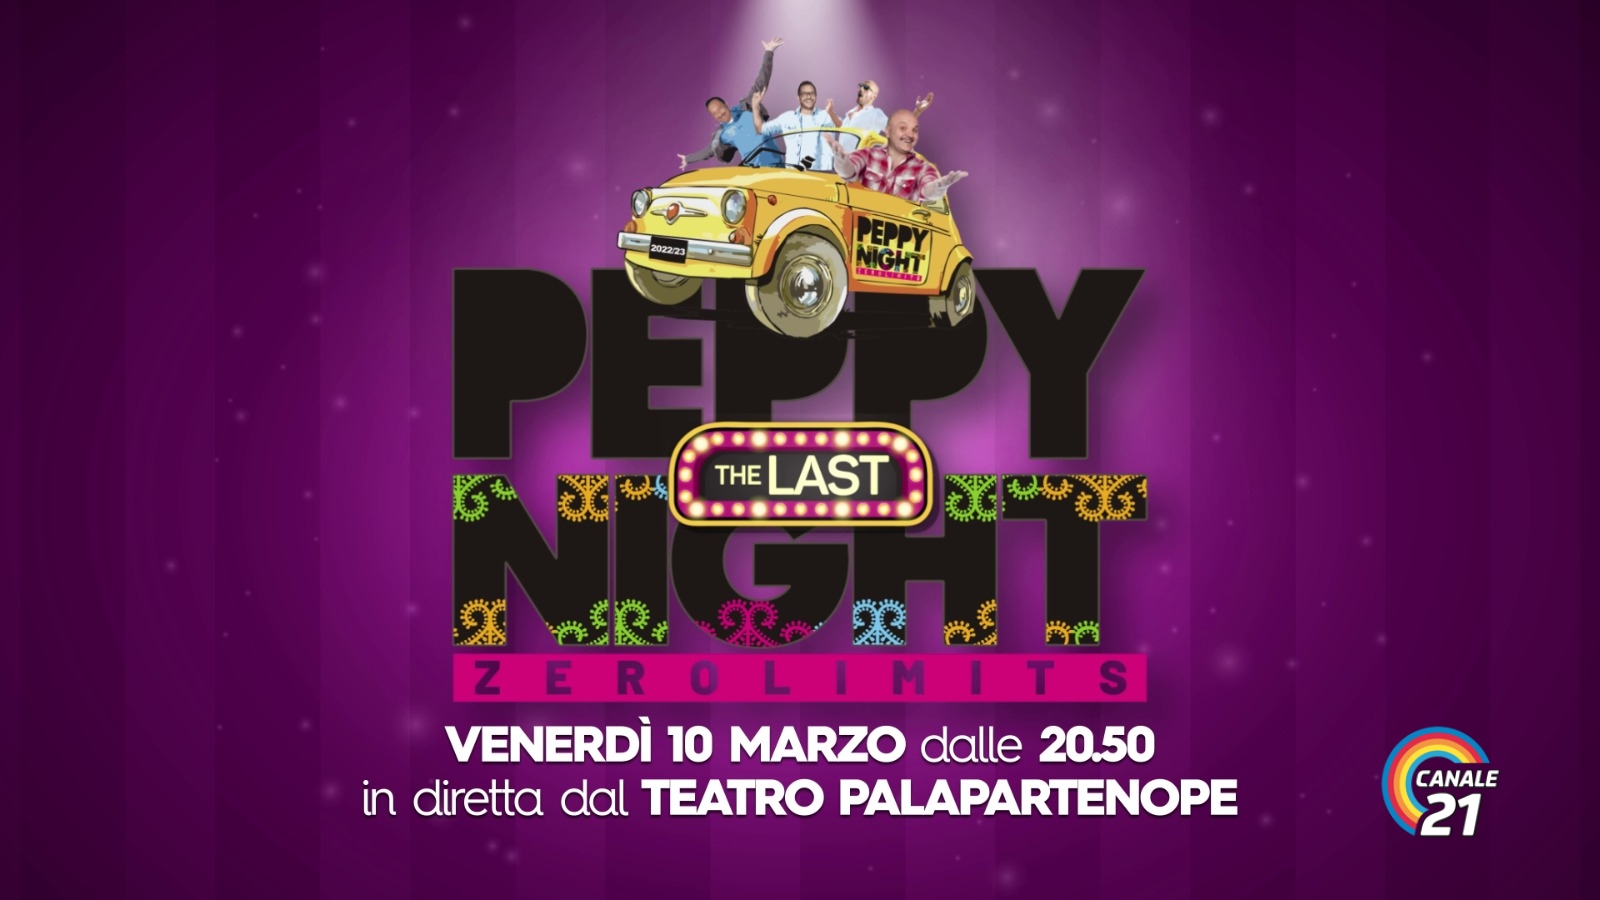 Peppy Night venerdì 10 marzo dalle ore 2040 teatro Palapartenope ultima puntata condotto da Peppe Iodice